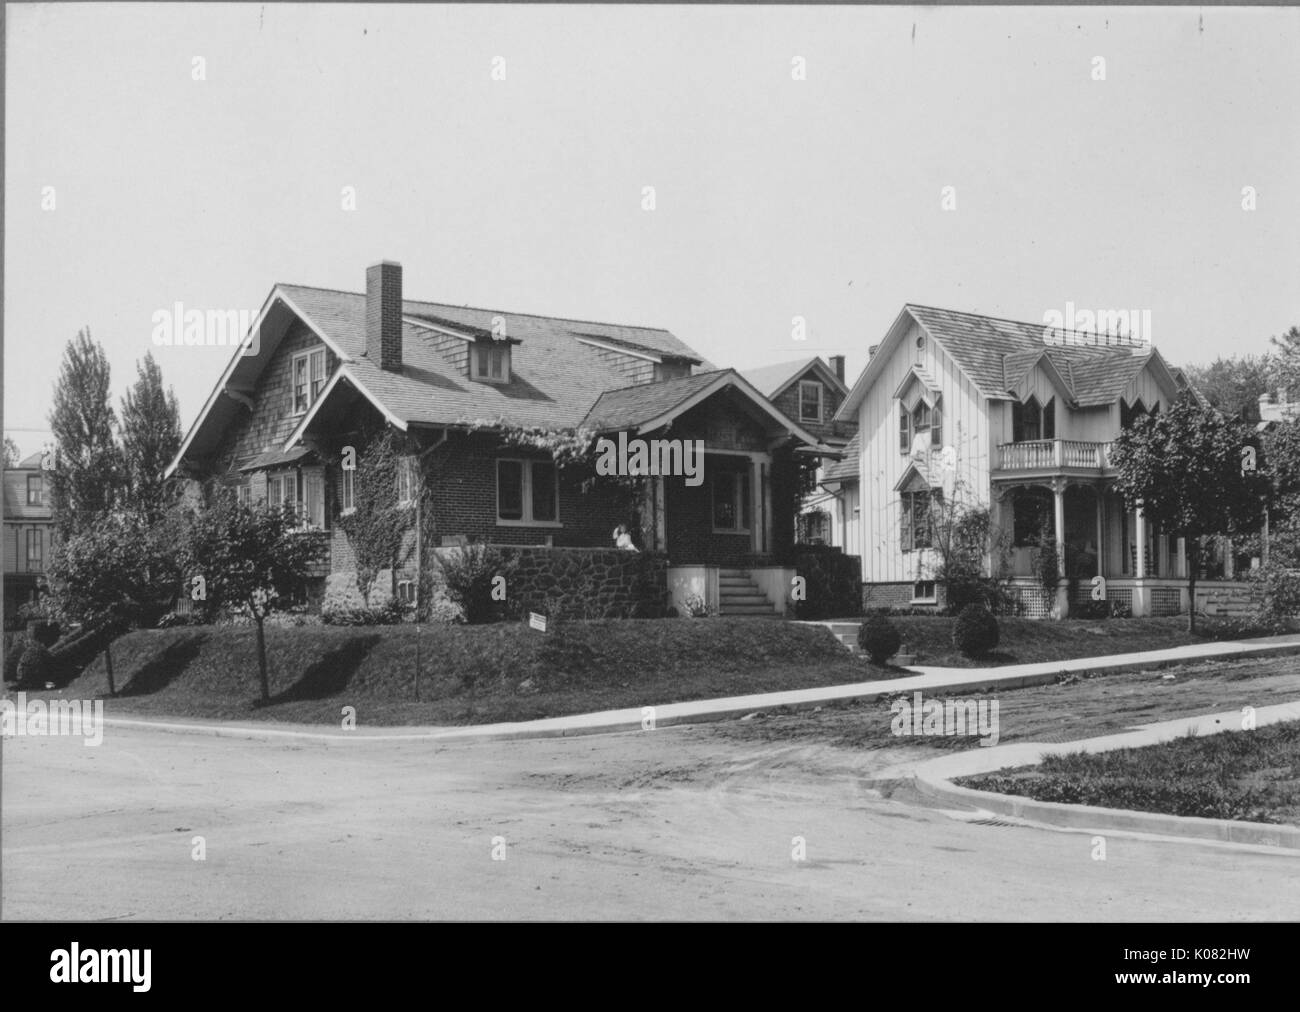 Vue du côté incliné de deux maisons sur rue calme, une maison faite de pierre de couleur sombre et de brique avec cheminée et plantes entourant maison et vignes à côté de mur, une autre maison avec des panneaux de couleur claire, d'une véranda et de colonnes, la rue et les trottoirs longeant les maisons, les arbres bordant les trottoirs, les maisons sur une légère colline, Baltimore, Maryland, 1910. Cette image est tirée d'une série sur la construction et la vente de maisons dans le quartier Roland Park/Guilford de Baltimore, a streetcar suburb et l'une des premières communautés planifiées aux États-Unis. Banque D'Images